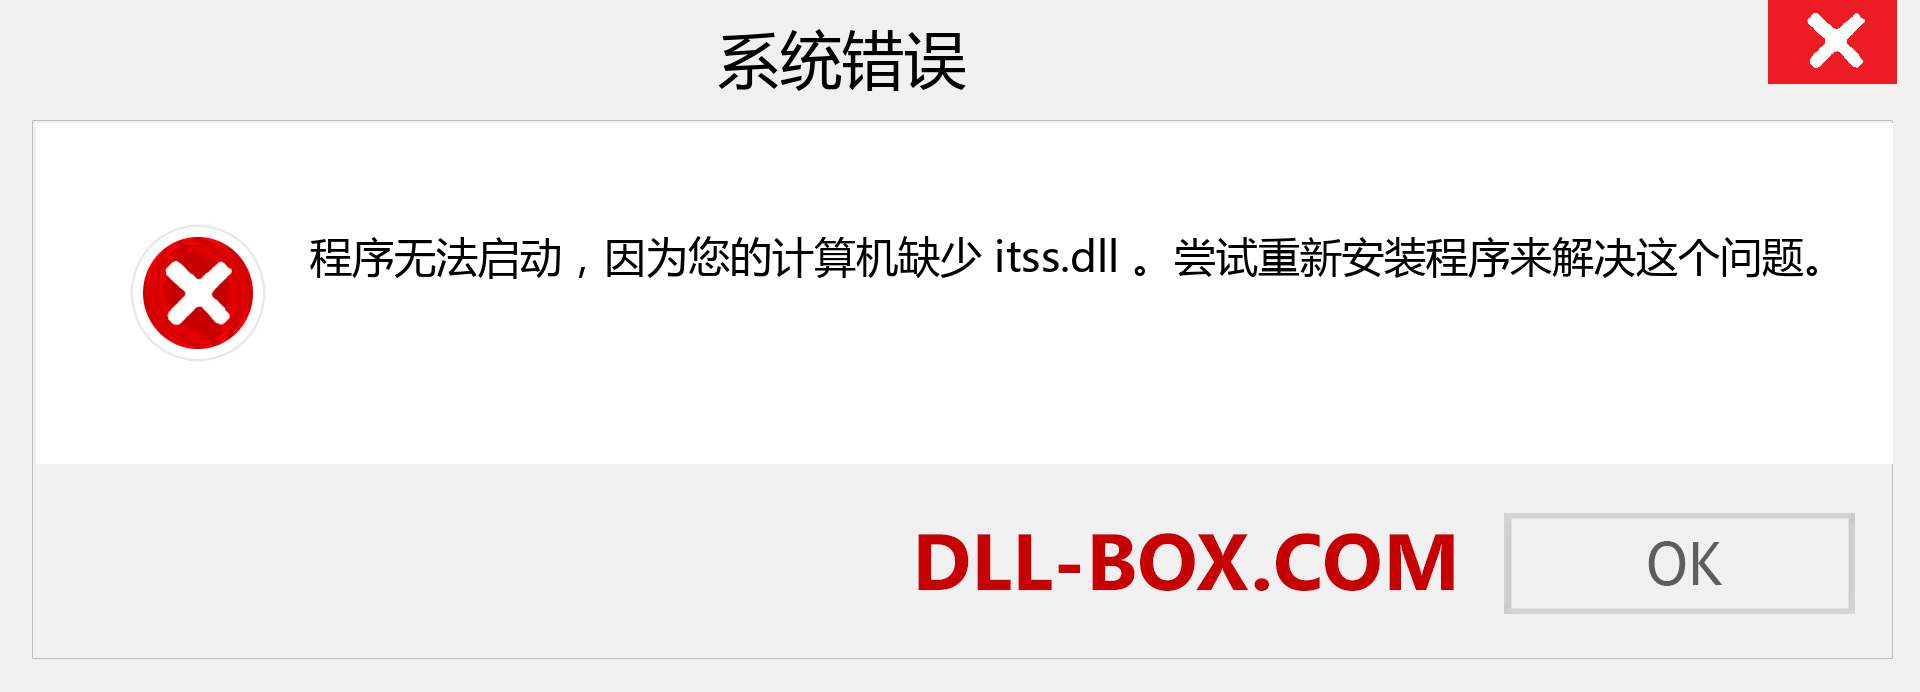 itss.dll 文件丢失？。 适用于 Windows 7、8、10 的下载 - 修复 Windows、照片、图像上的 itss dll 丢失错误